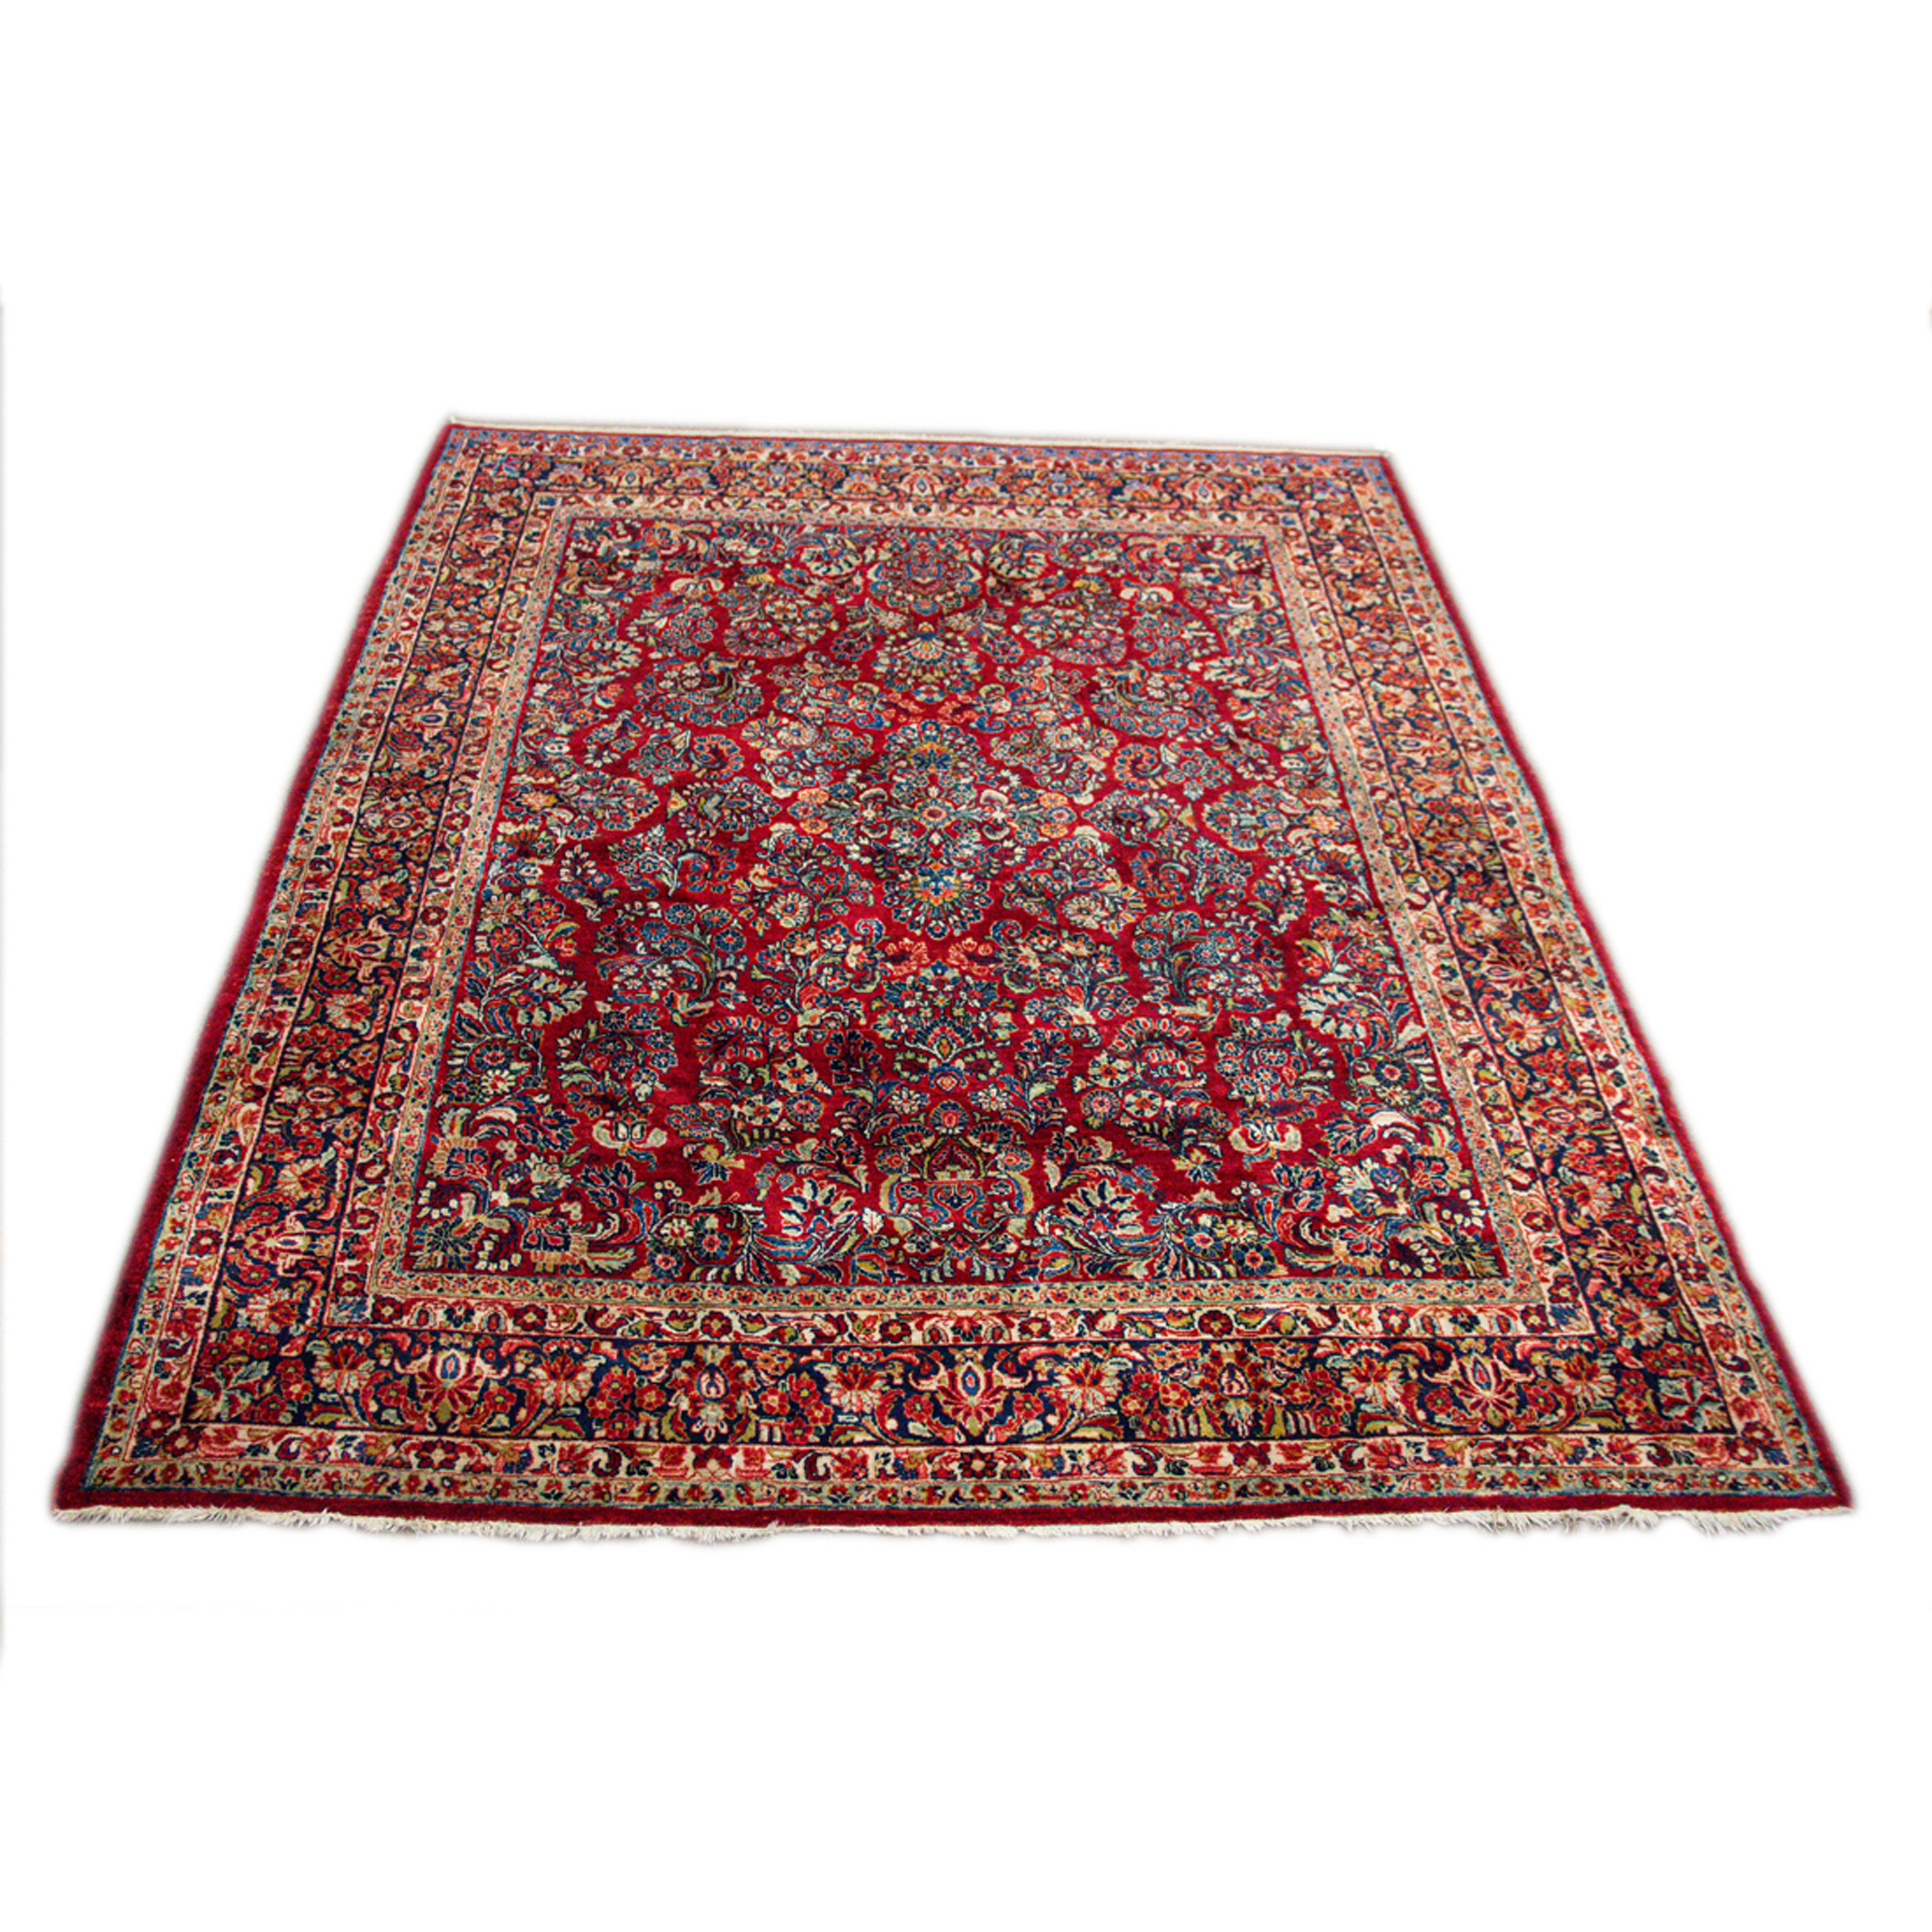 A SAROUK CARPET A Sarouk carpet,